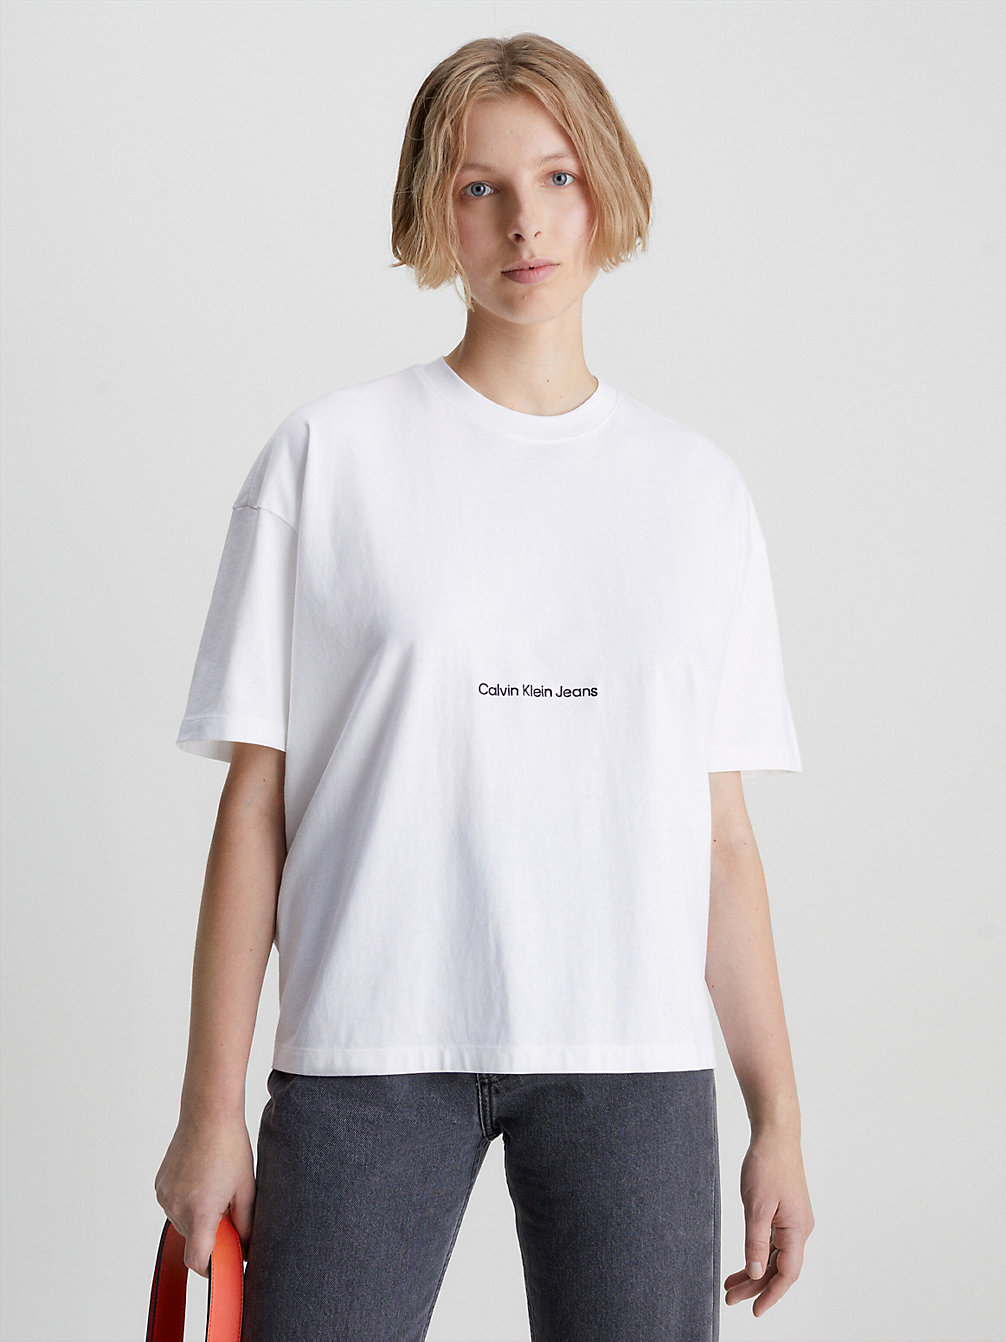 Camiseta Boyfriend > BRIGHT WHITE > undefined mujer > Calvin Klein